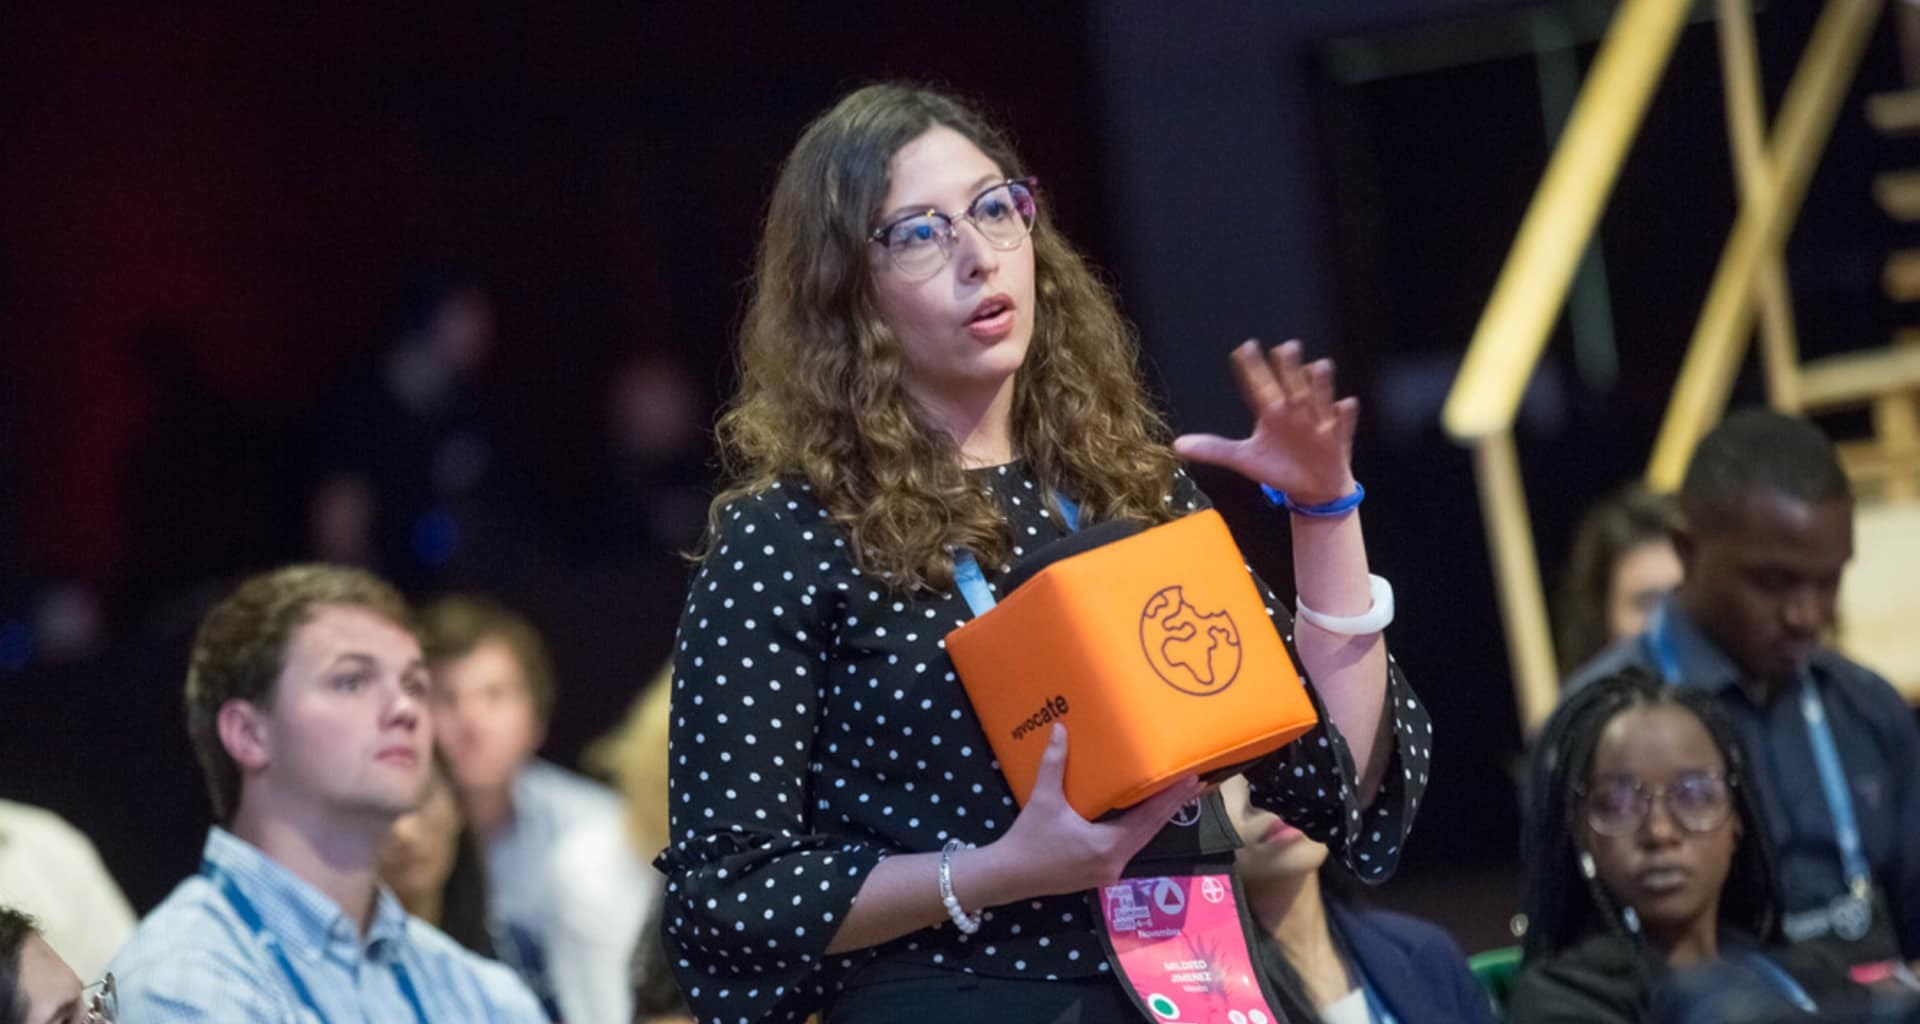 Alumna líder en biotecnología participa en Youth Ag Summit de Bayer 2019